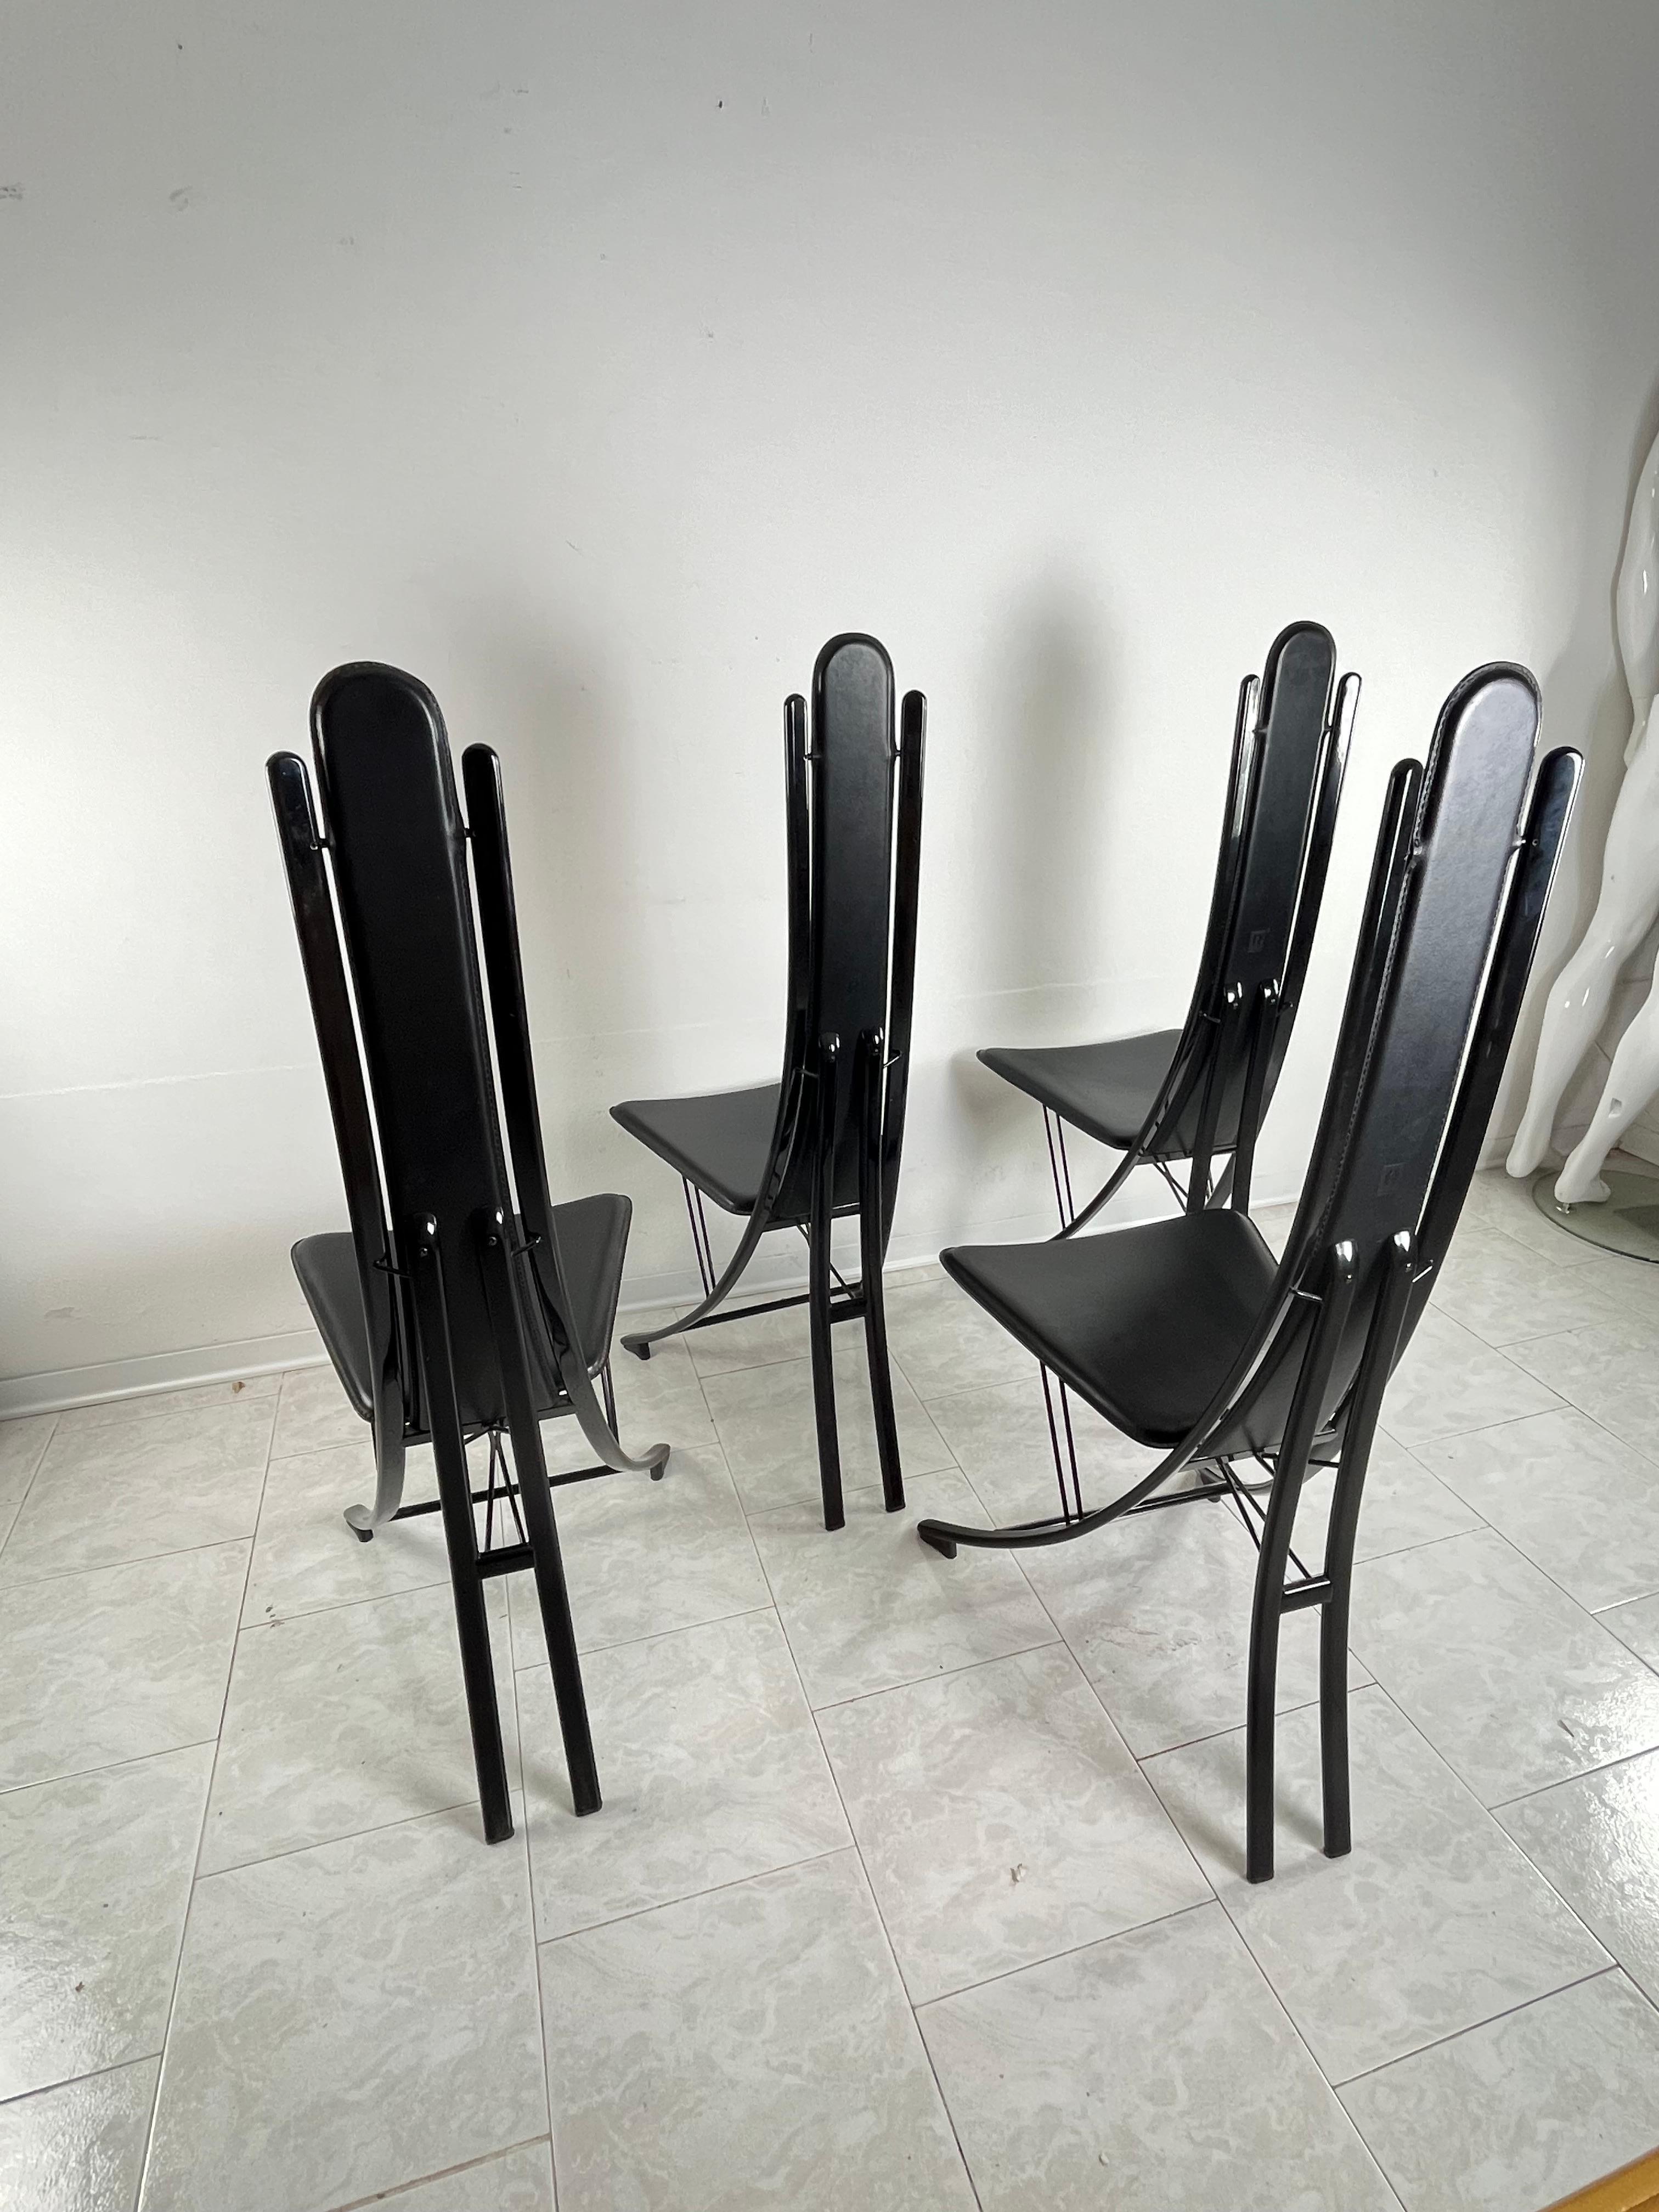 Vintage Satz von 4 Stühlen aus Stahl und Leder, zugeschrieben Recanatini, italienisches Design  1980s
Intakt und in gutem Zustand, geringe Alterungsspuren.
Sie tragen das auf dem Leder aufgedruckte Zuordnungszeichen.
